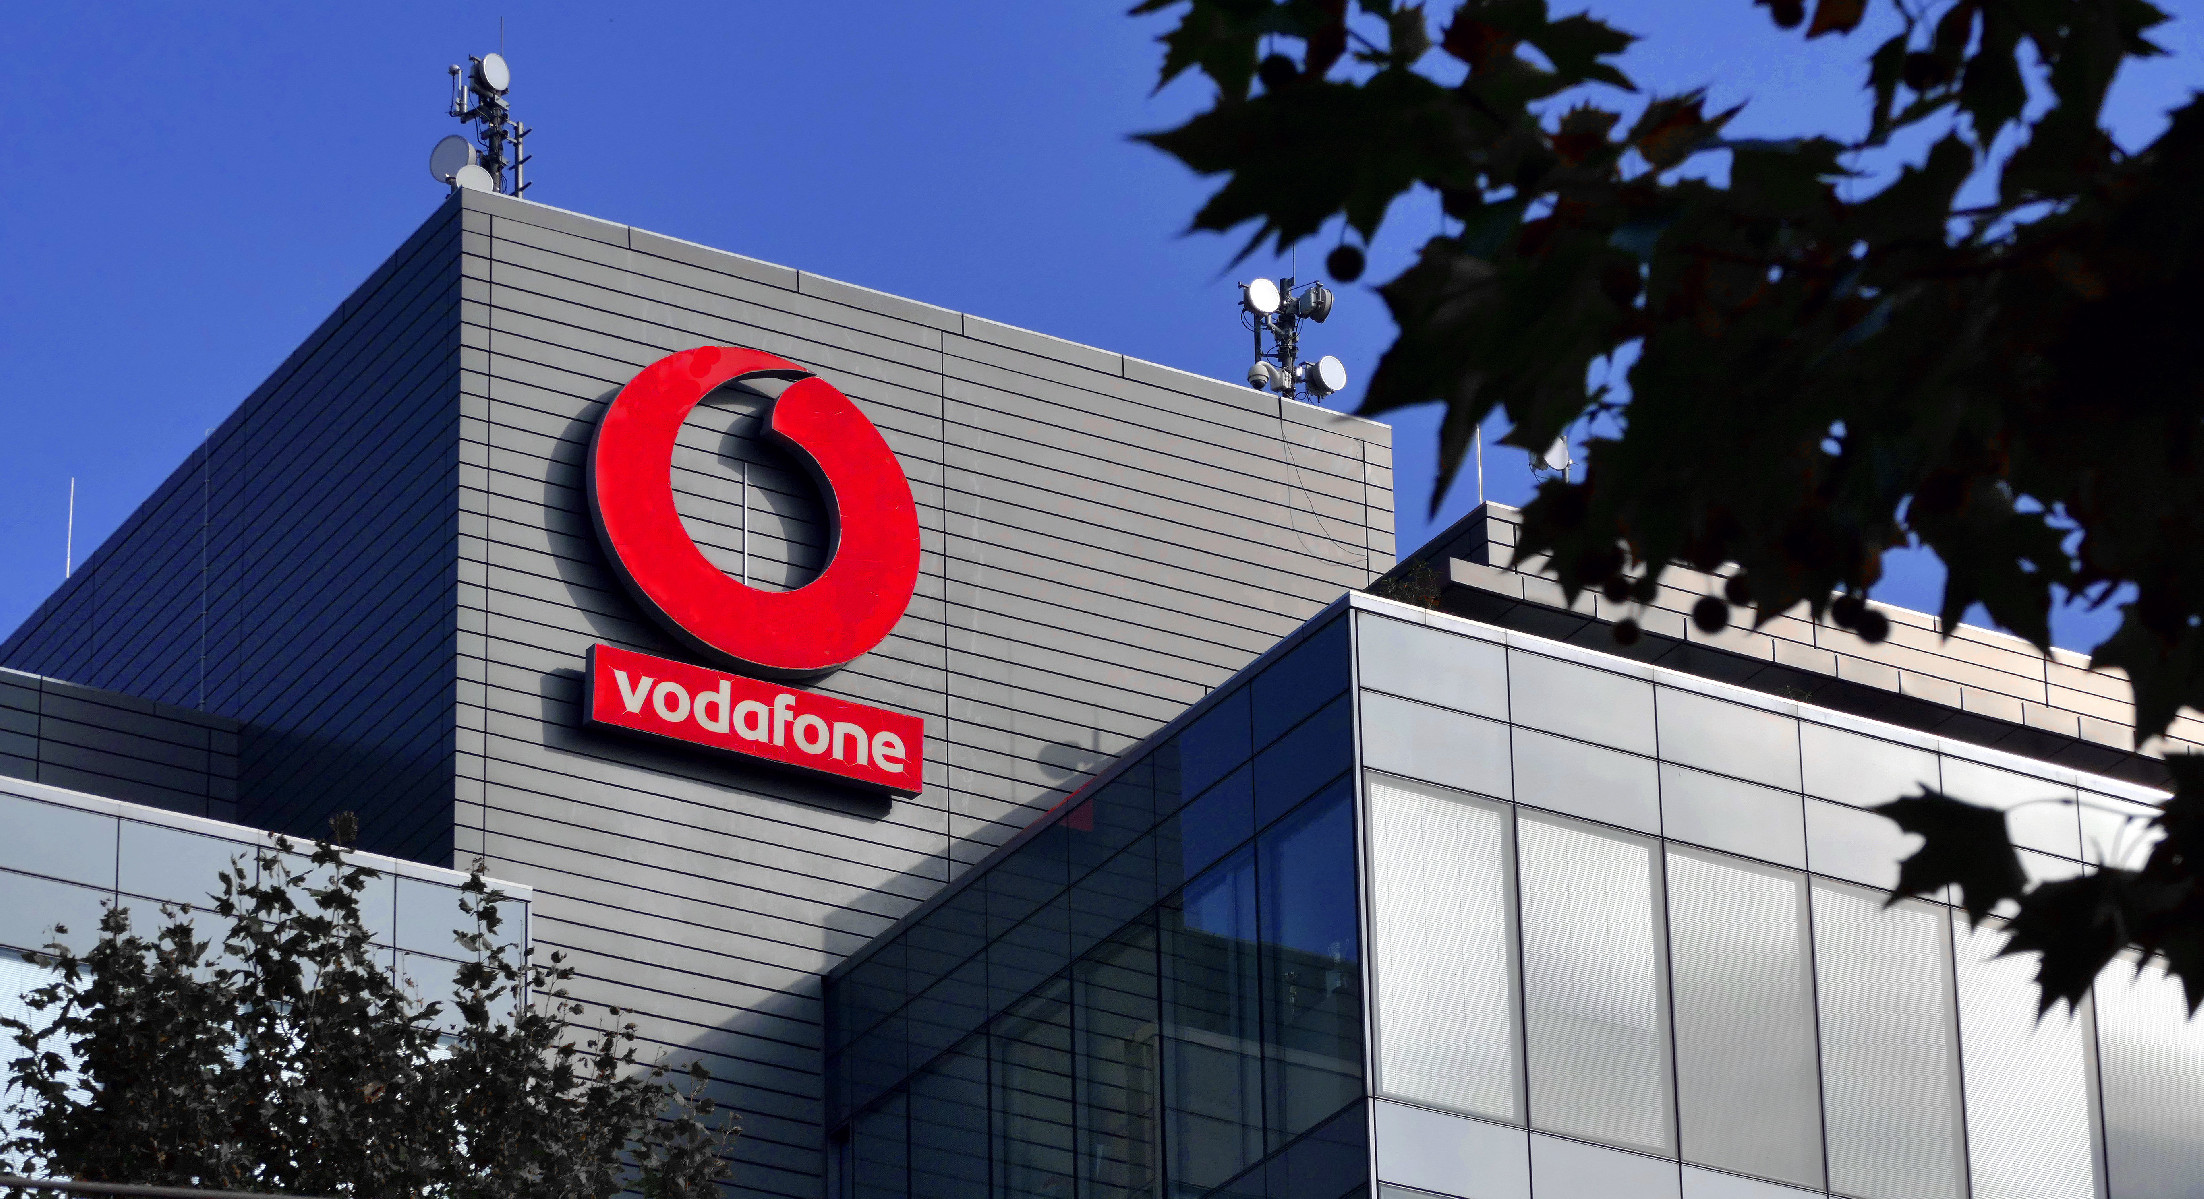 Jóváhagyta az állam, hogy a 4iG cége hitelt vegyen fel a Vodafone megvásárlására